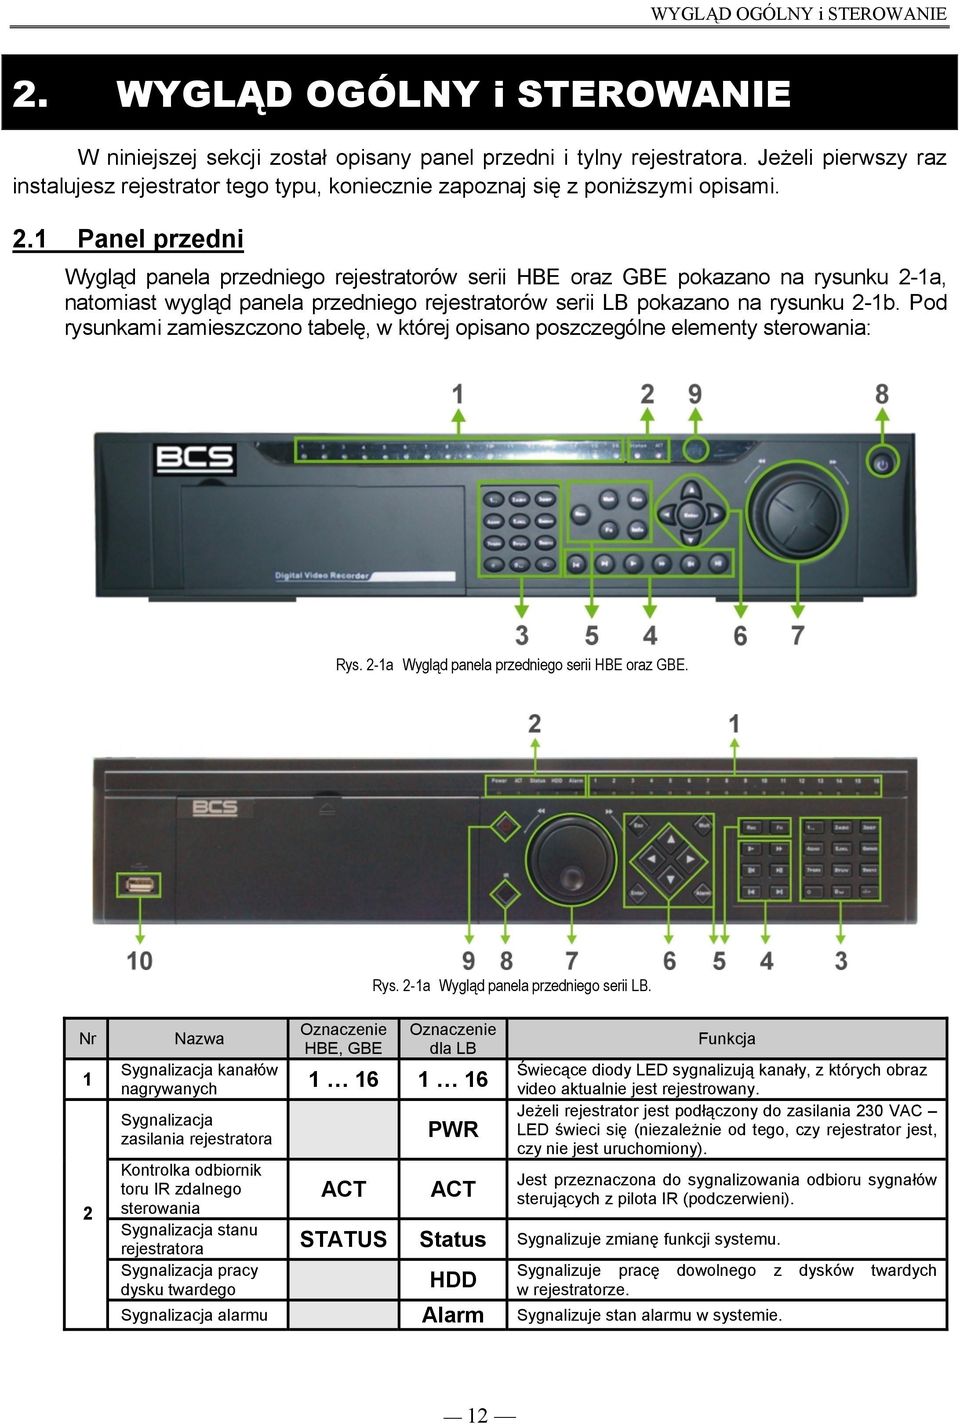 1 Panel przedni Wygląd panela przedniego rejestratorów serii HBE oraz GBE pokazano na rysunku 2-1a, natomiast wygląd panela przedniego rejestratorów serii LB pokazano na rysunku 2-1b.